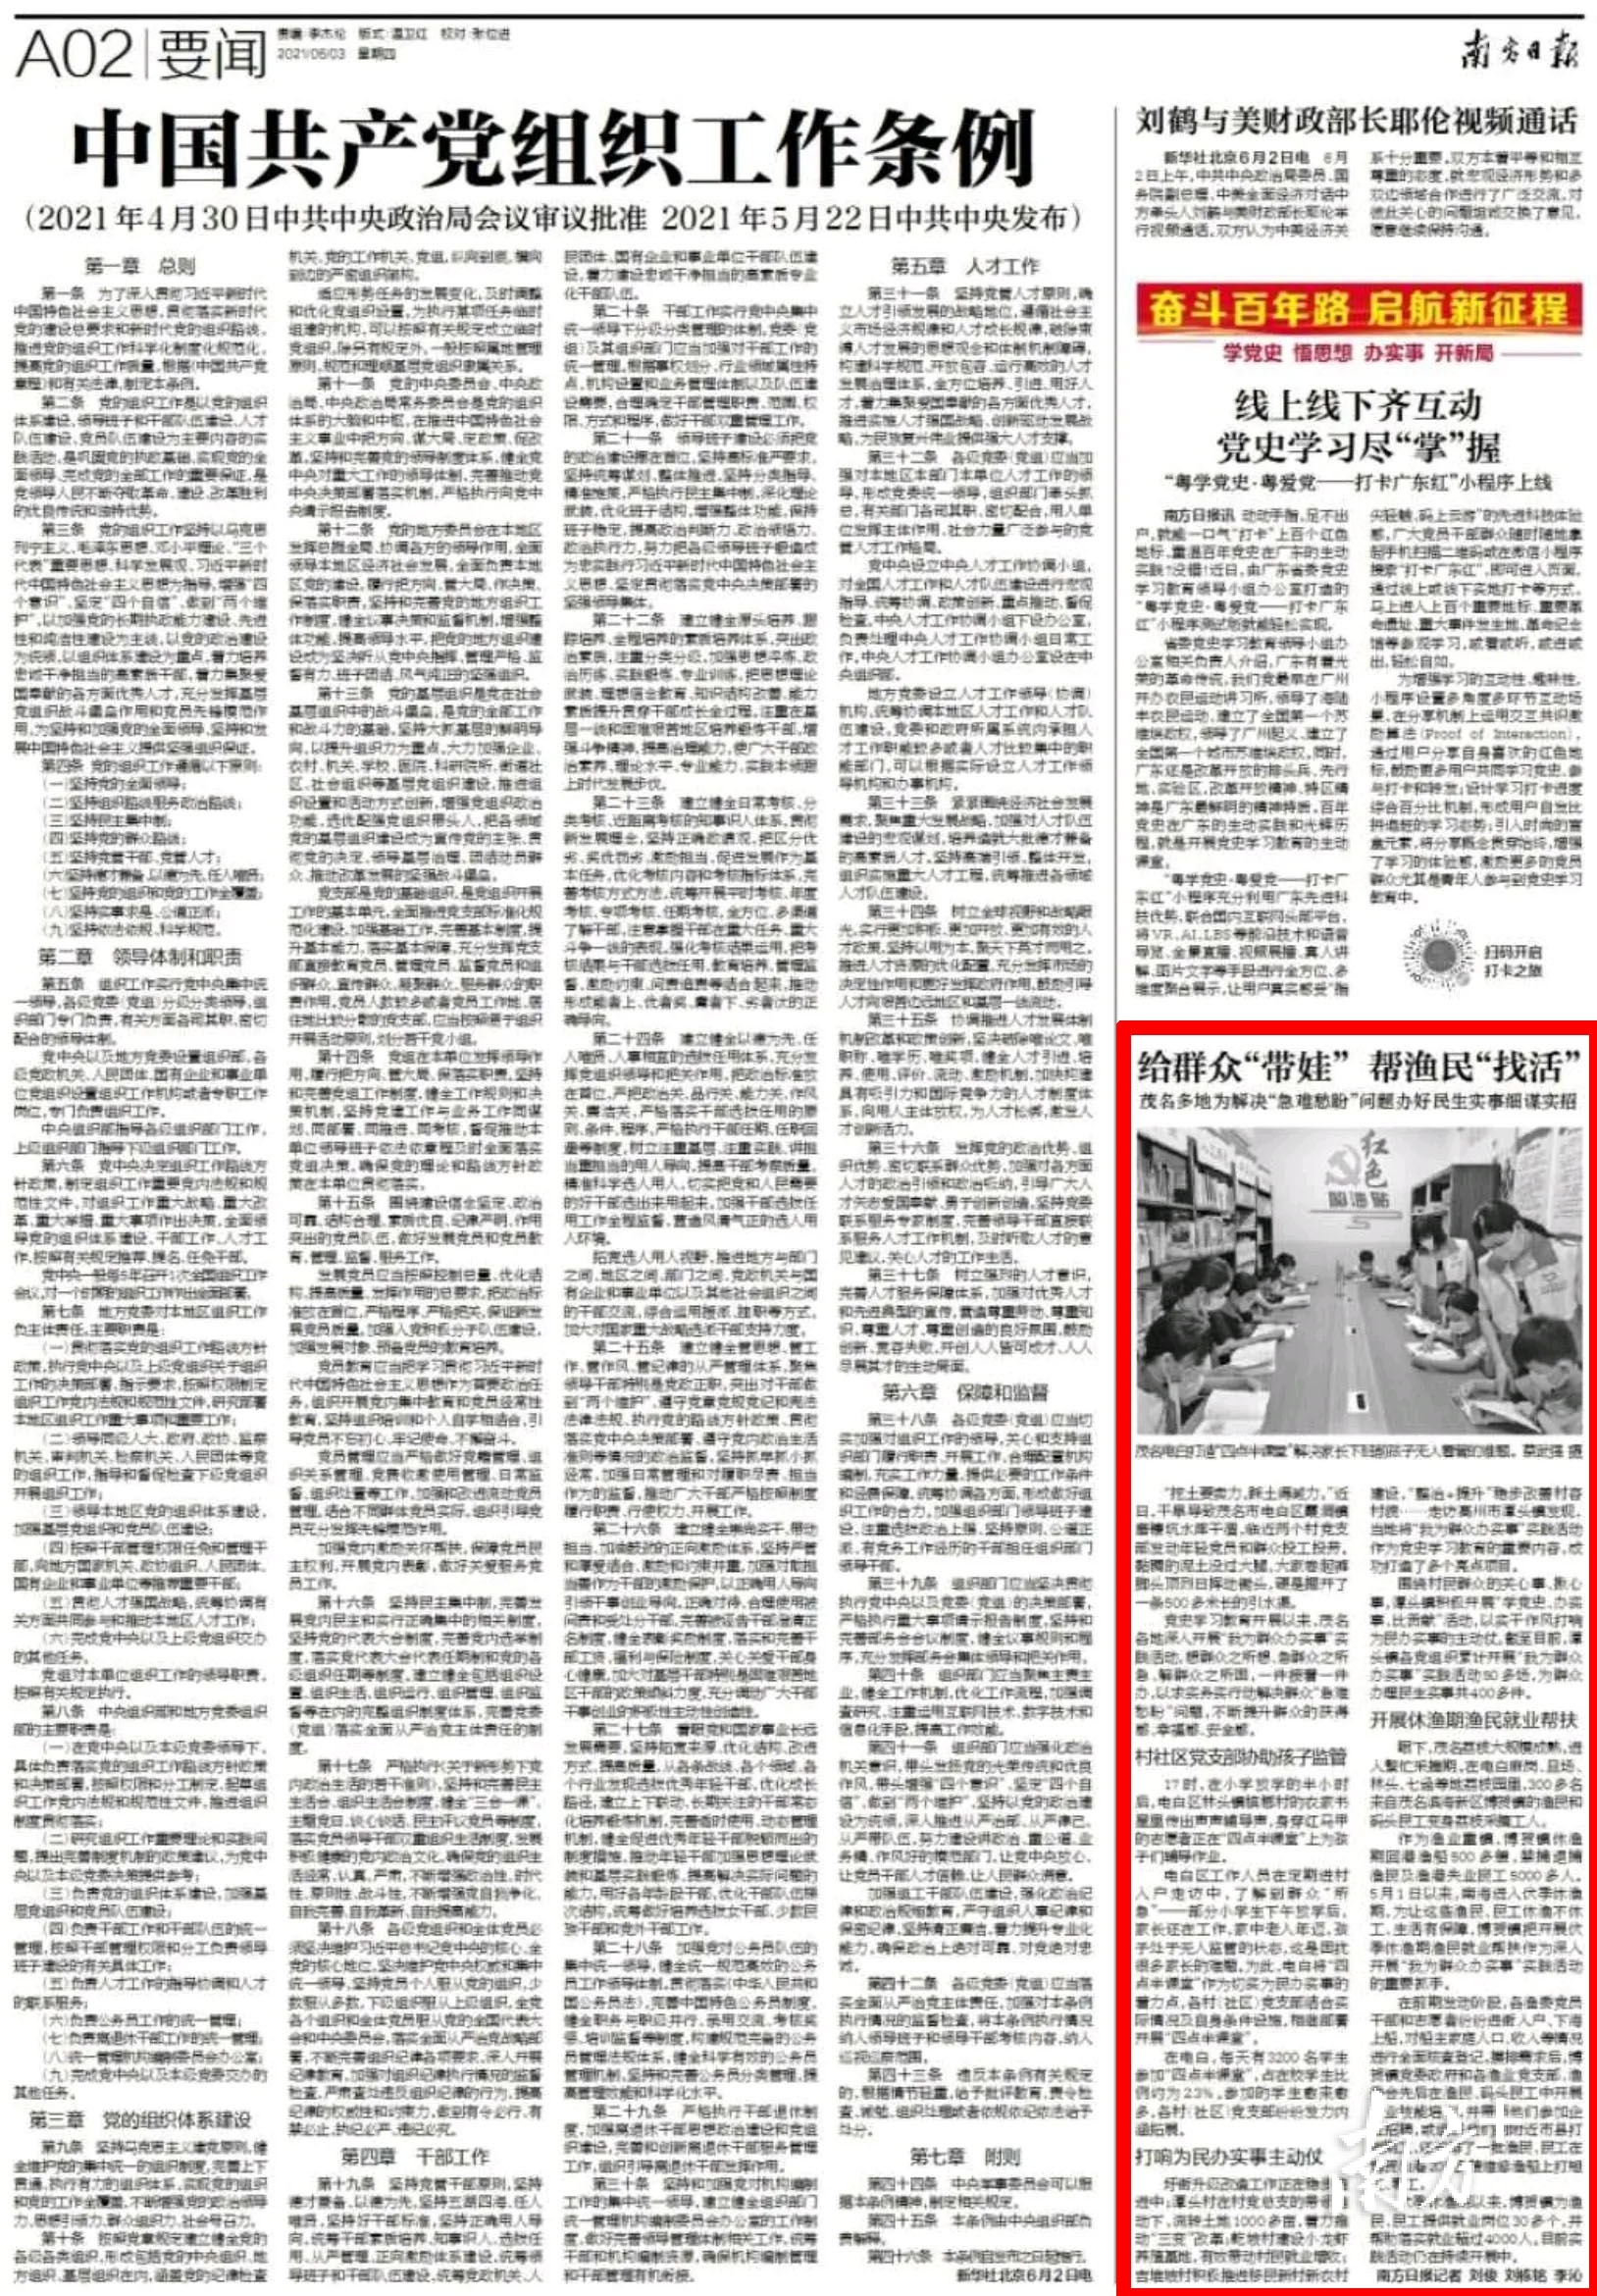 6月3日《南方日报》A02版报道。